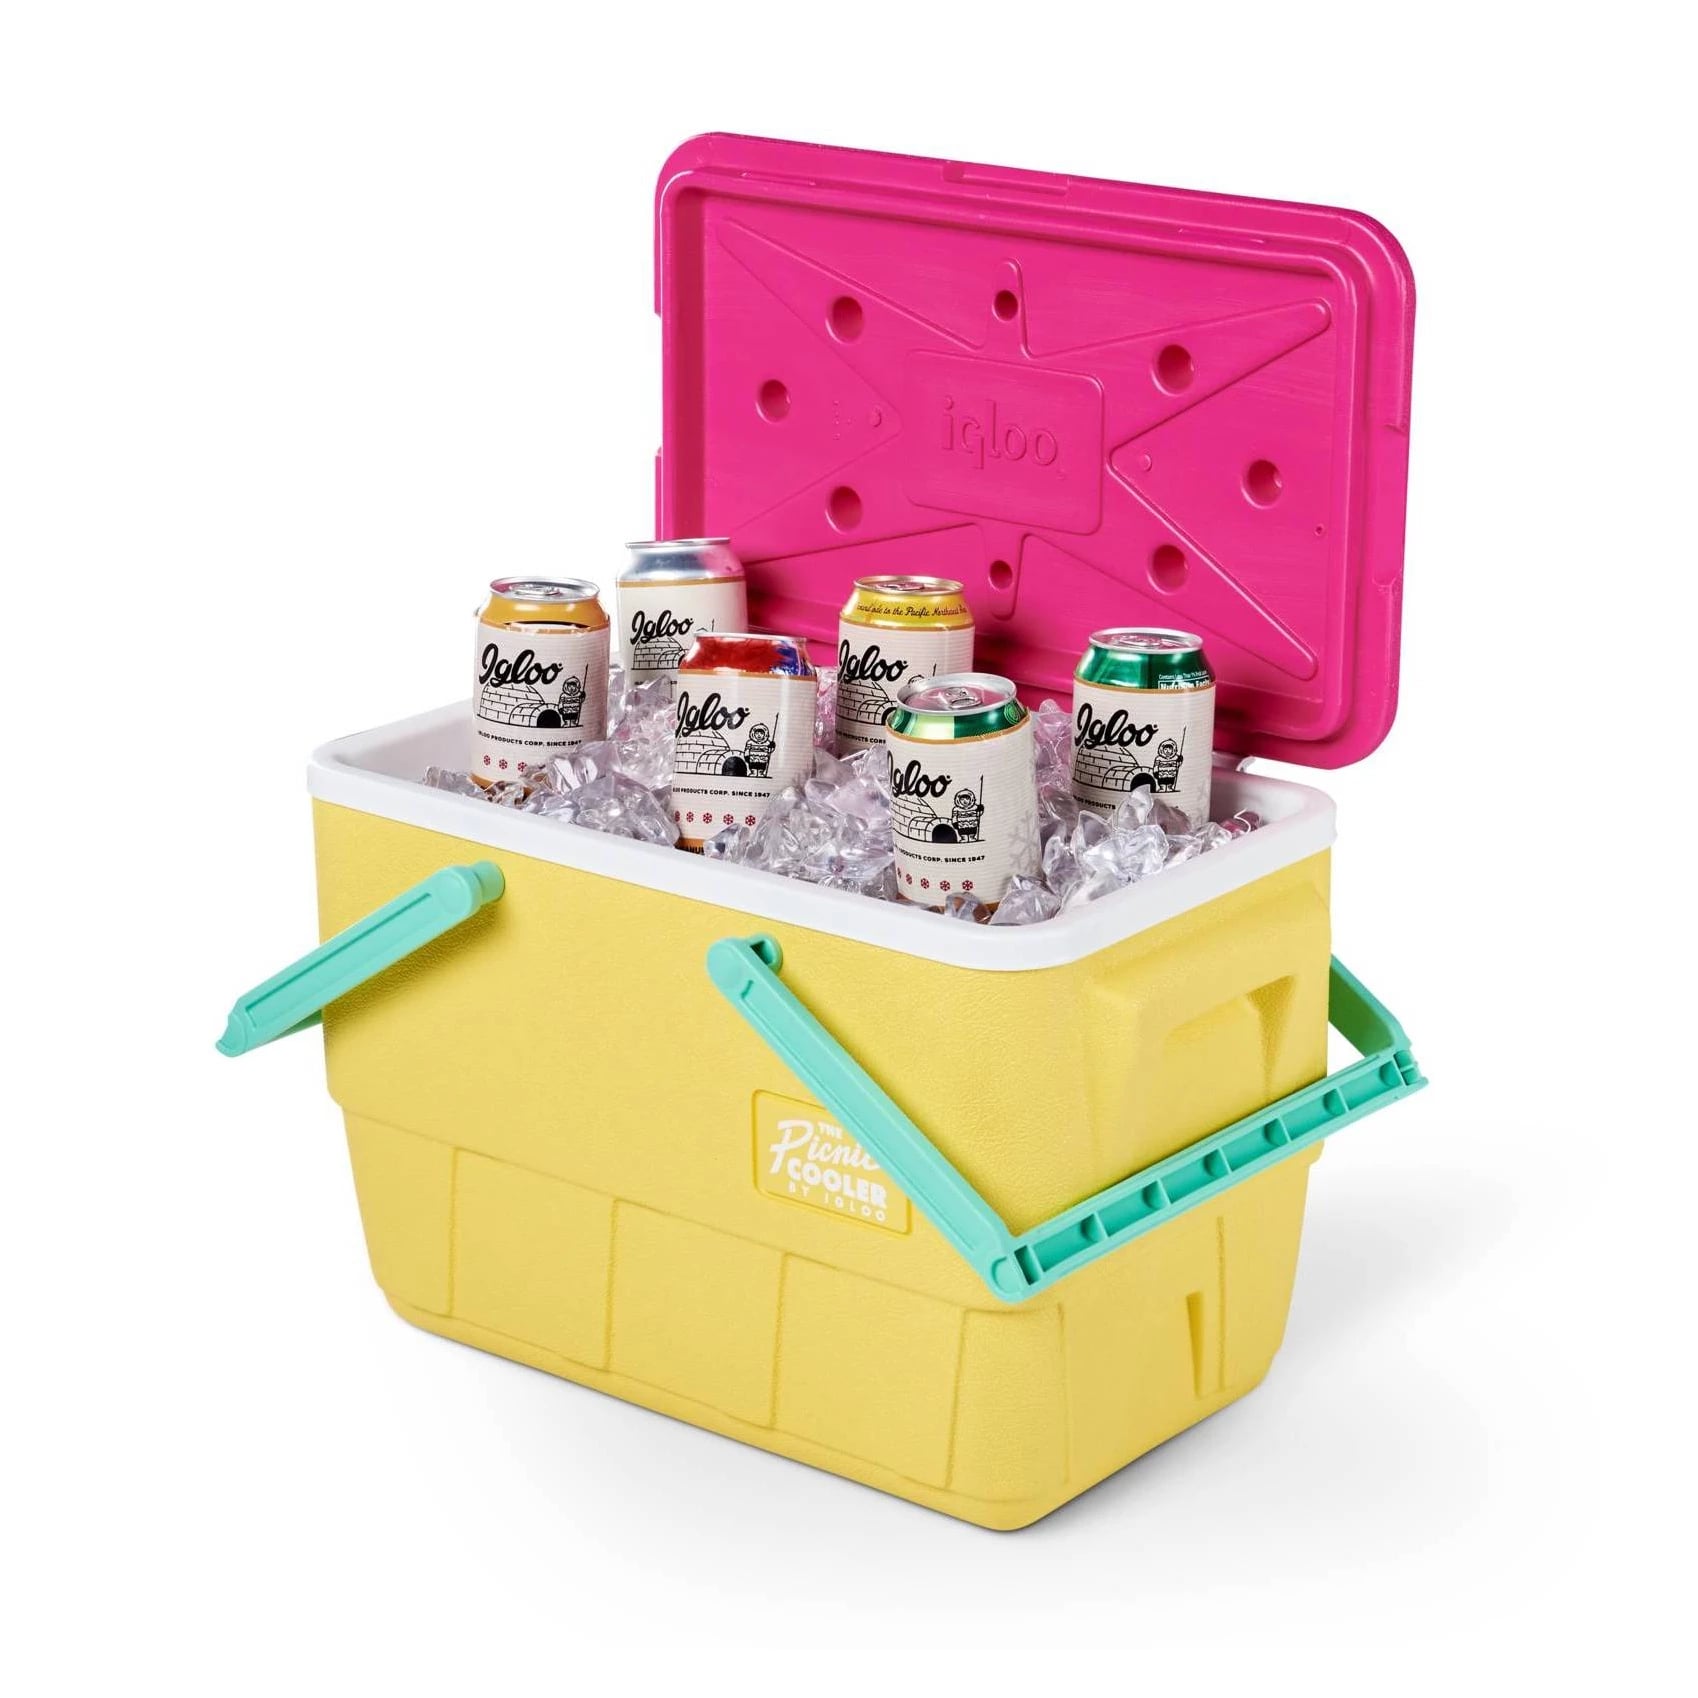 igloo picnic cooler